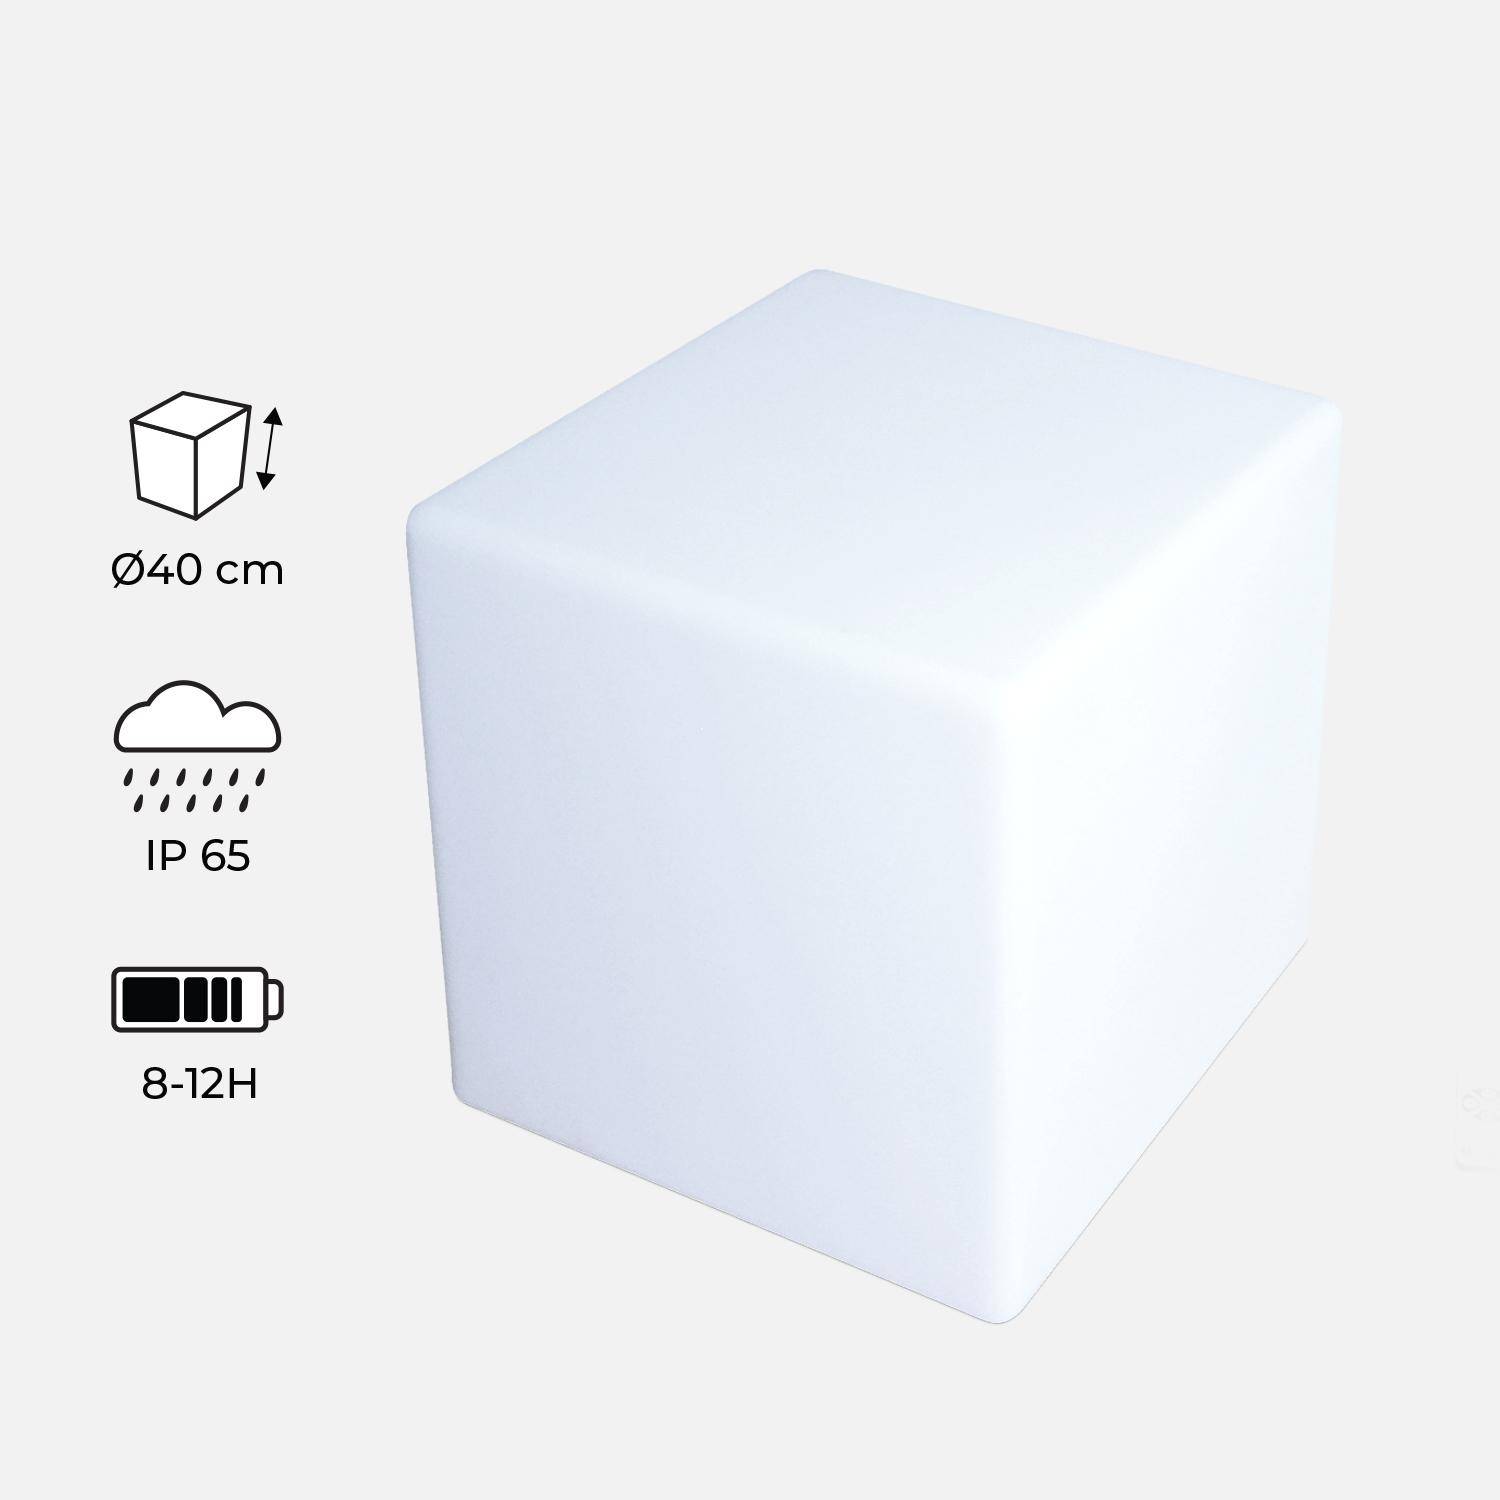 Cube LED 40cm – Cube décoratif lumineux, 40x40cm, blanc chaud, commande à distance Photo1